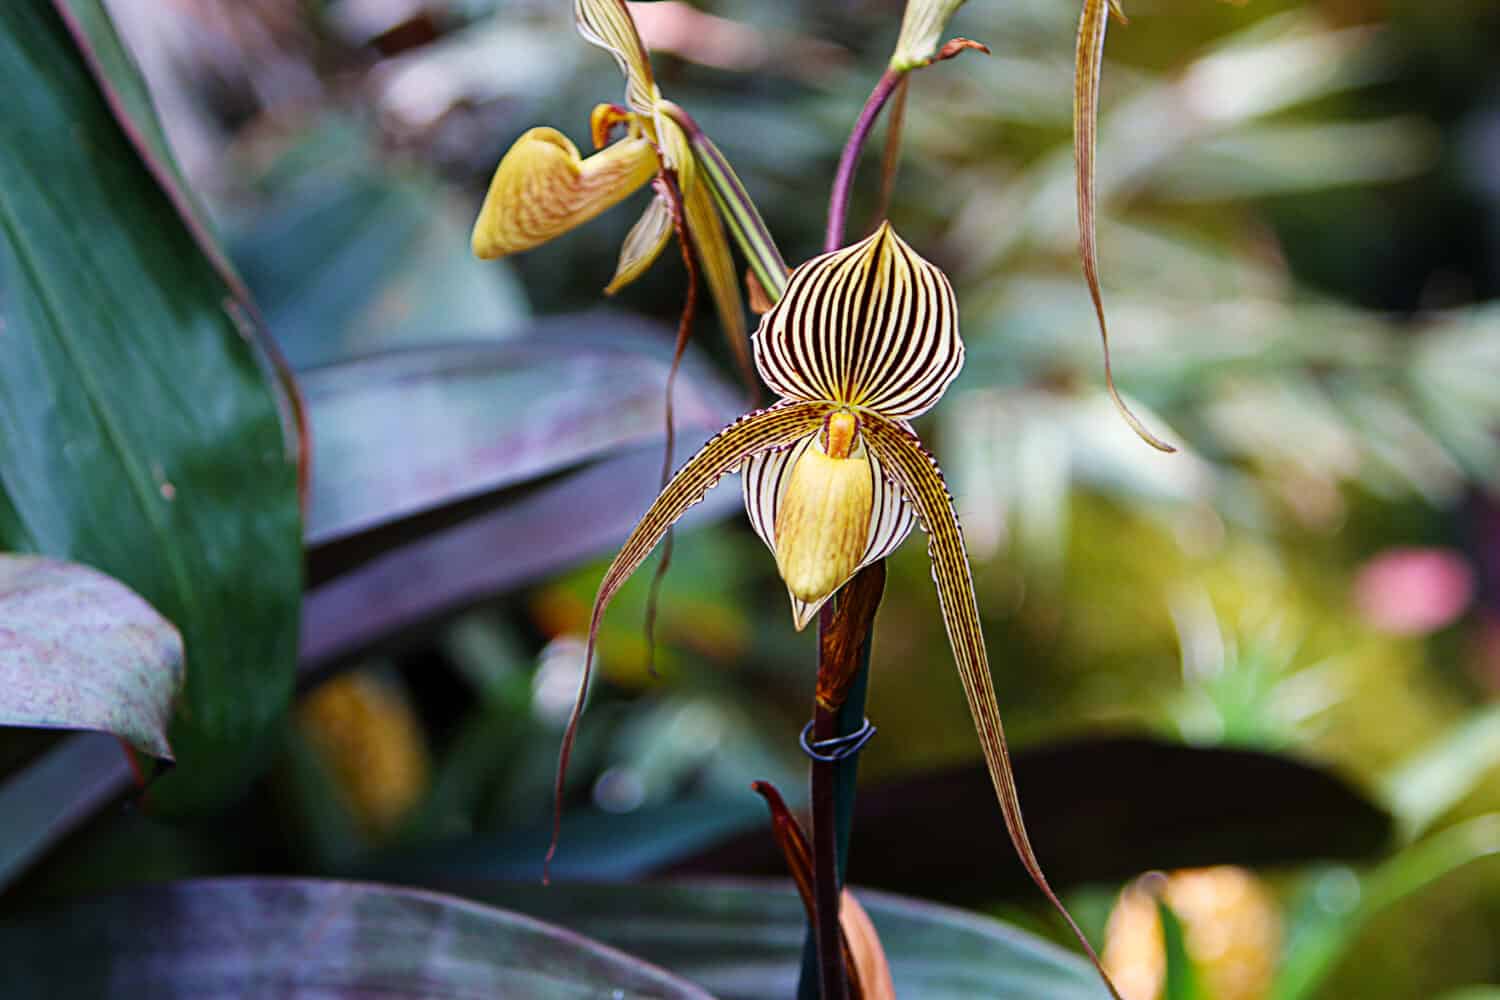 L'orchidea Paphiopedilum rothschildianum (oro di Kinabalu, orchidea pantofola di Rothschild) sta fiorendo nella serra, macro.  Fiore di orchidea a strisce.